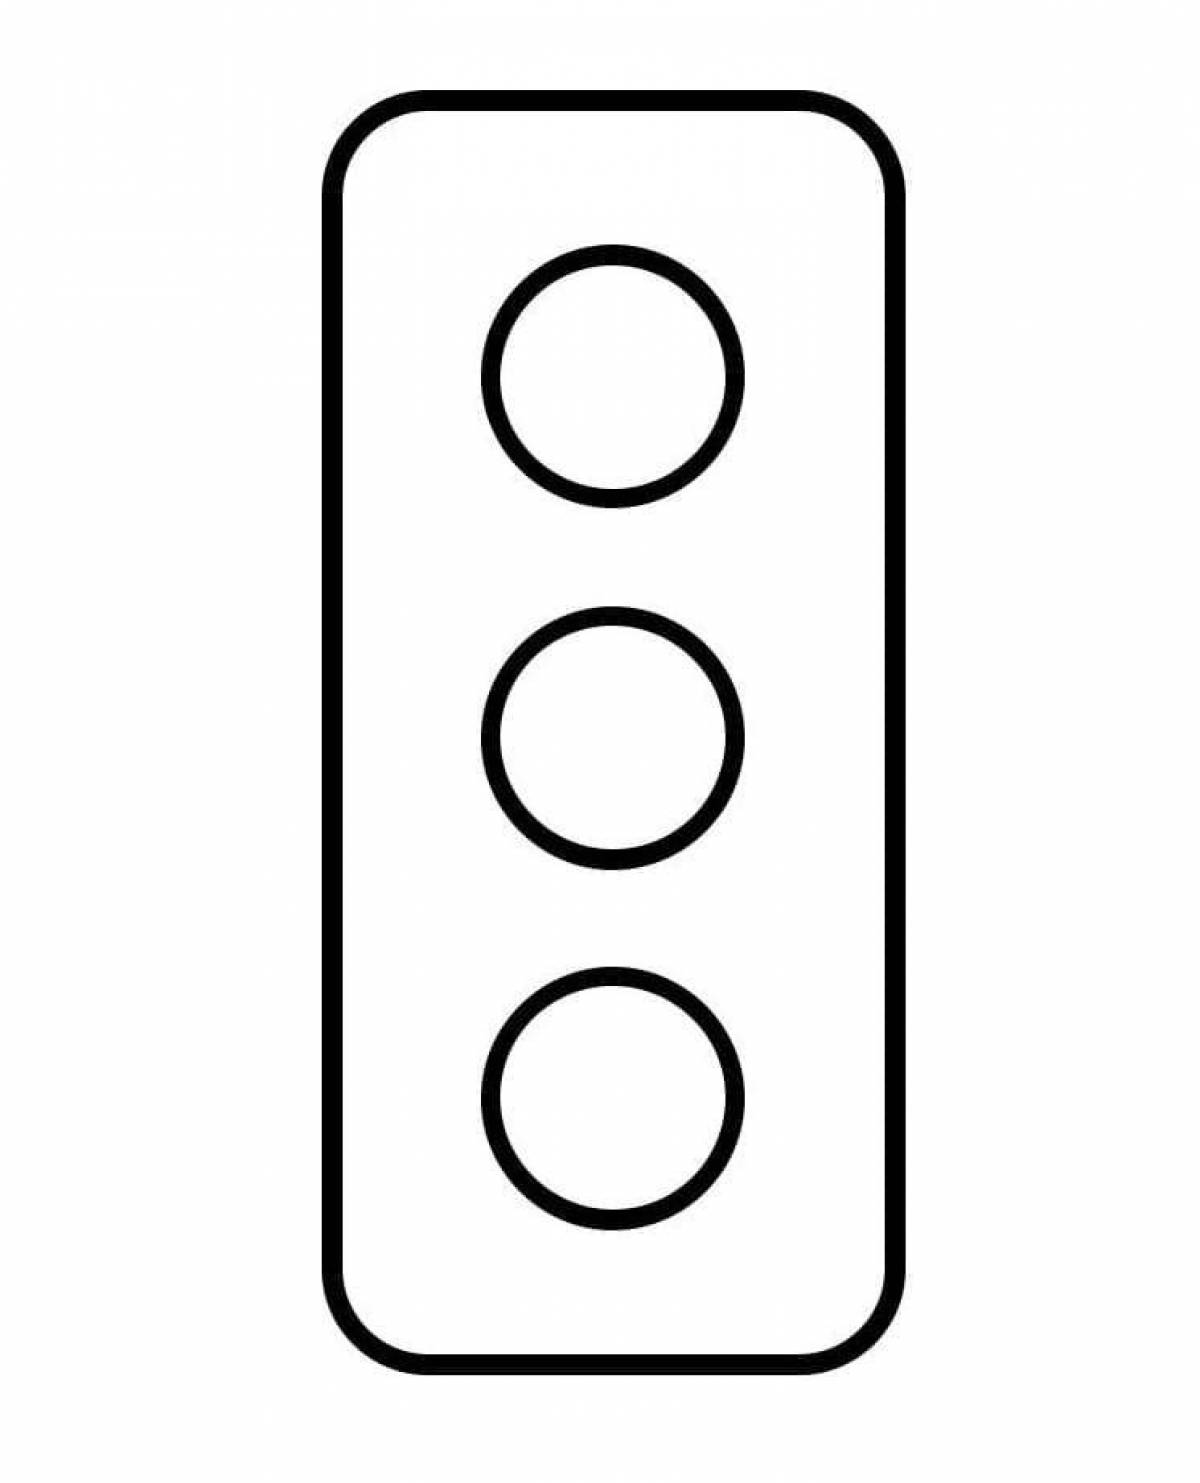 Traffic light for children #11